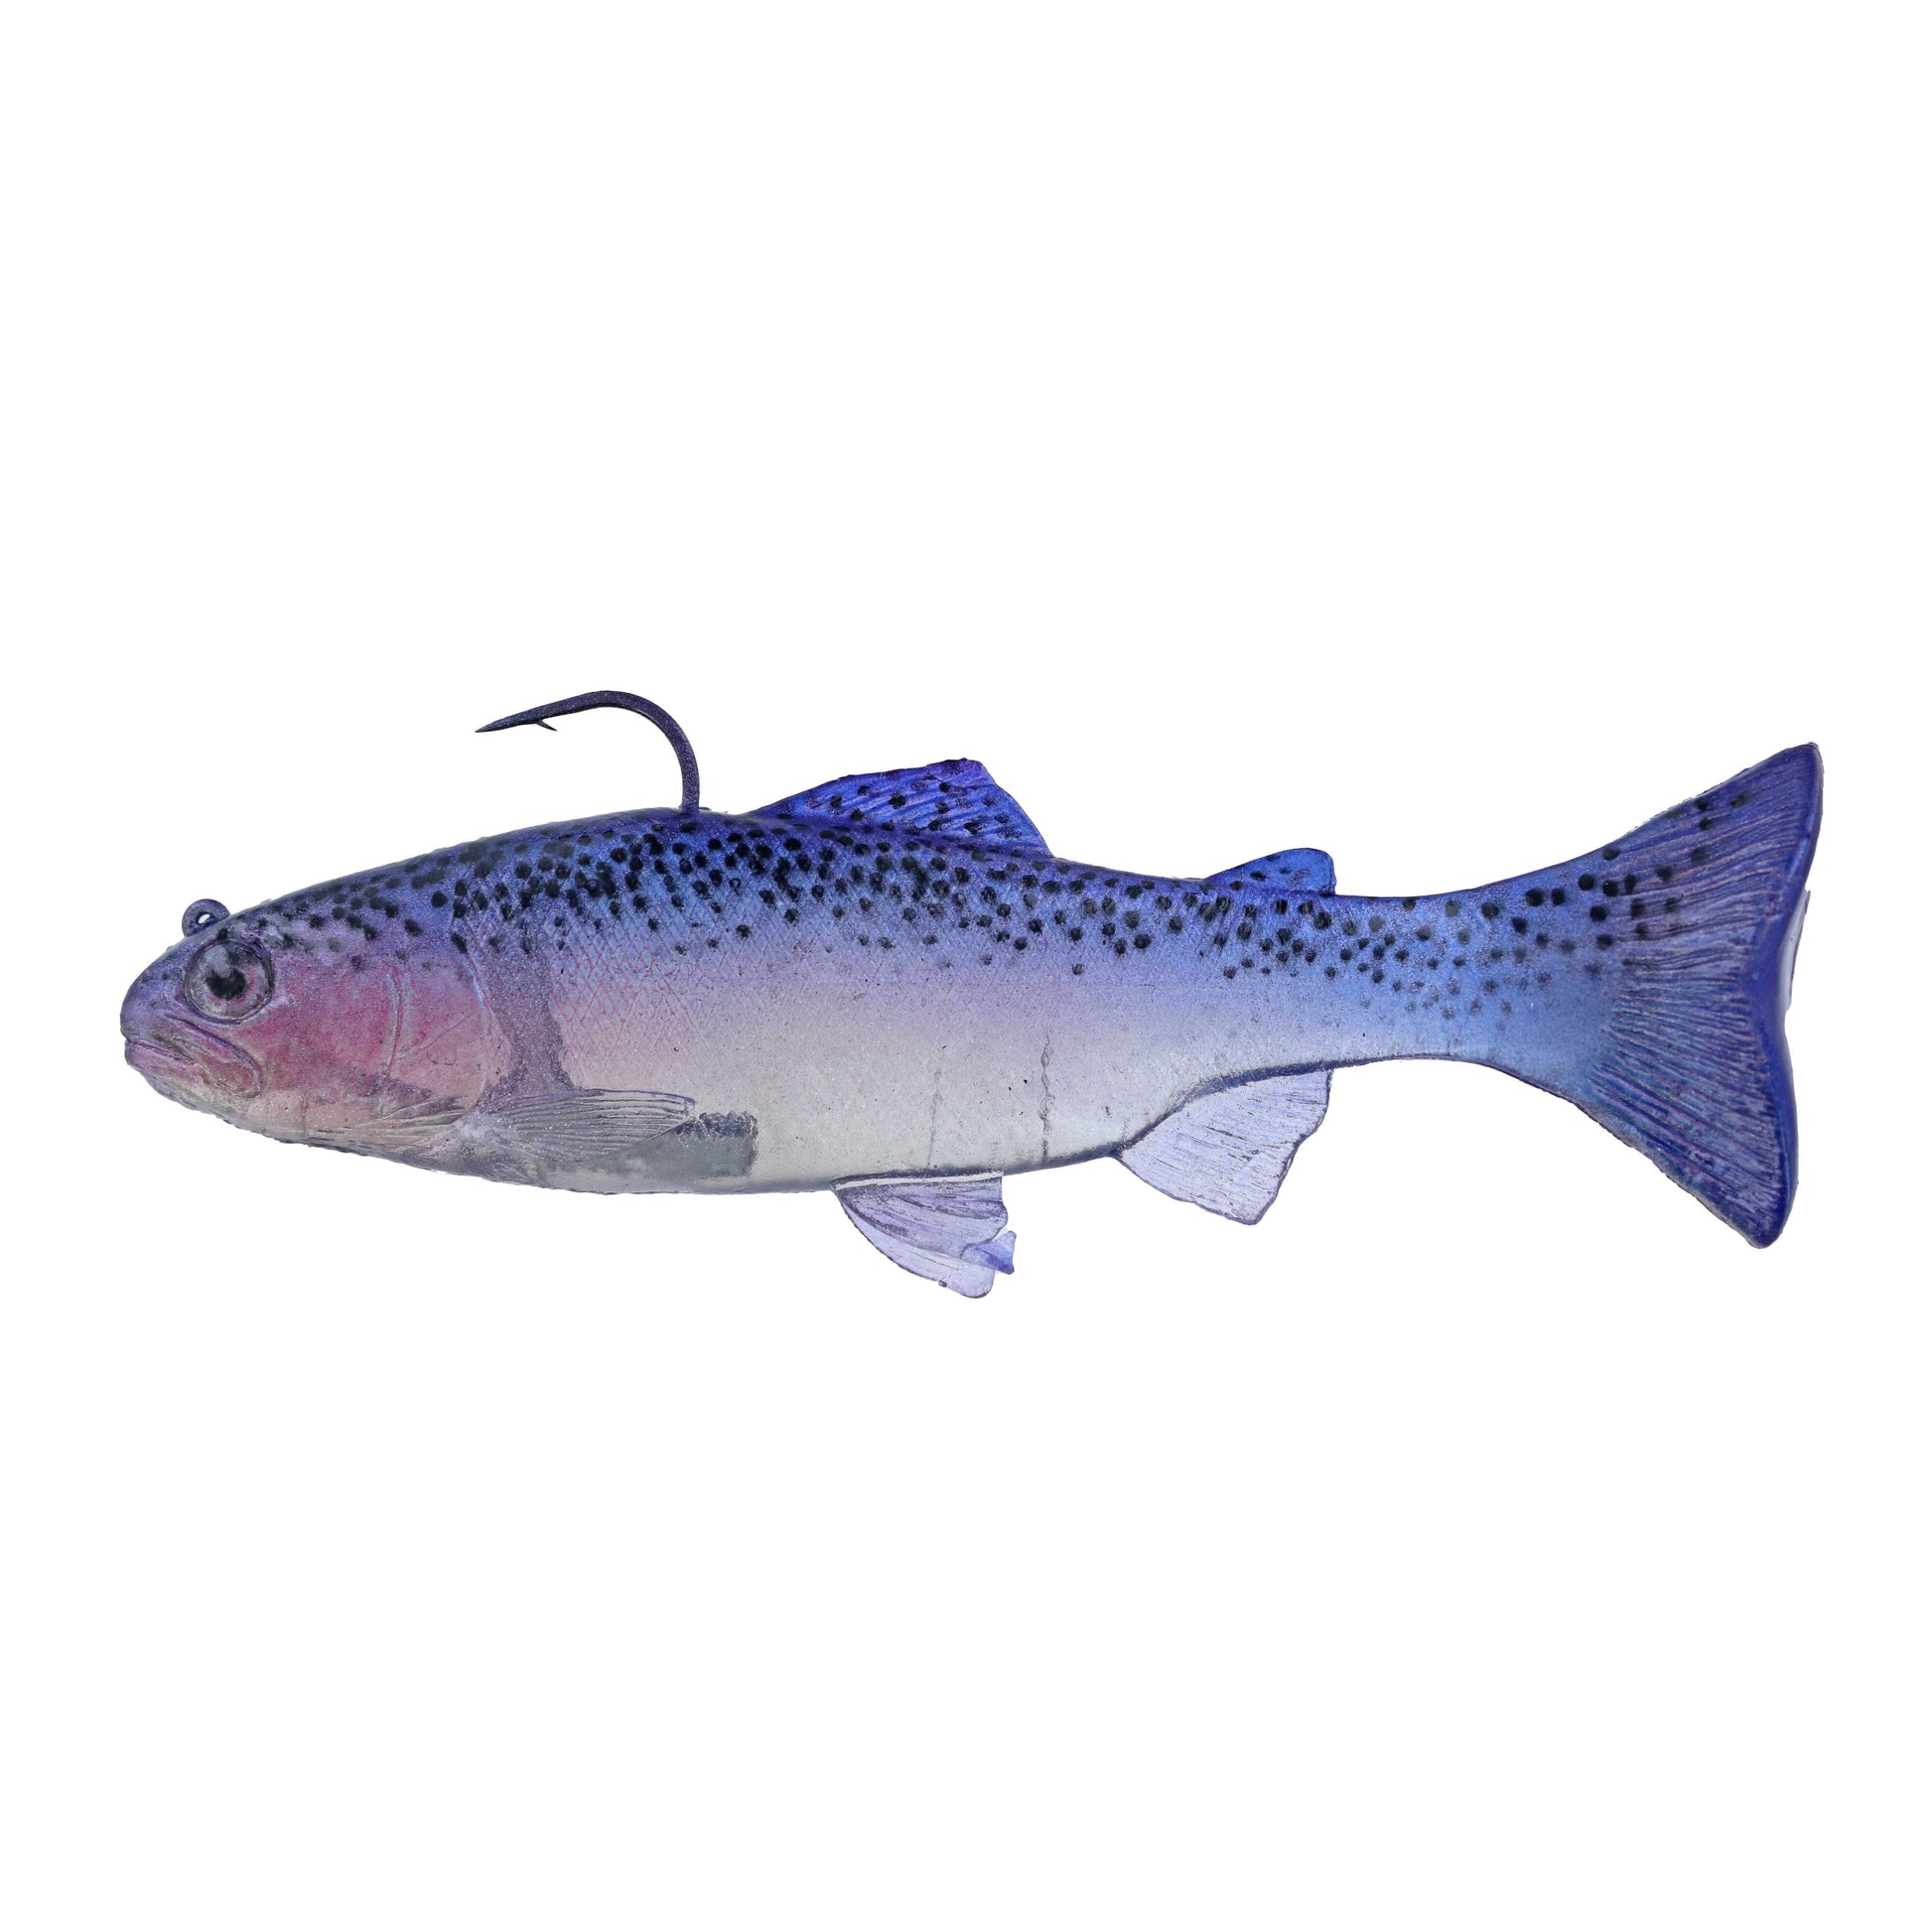 https://www.hammondsfishing.com/cdn/shop/files/Huddleston-68-Special-Swimbait-Top-Hook-Phantom-Shasta.jpg?v=1692070742&width=1946